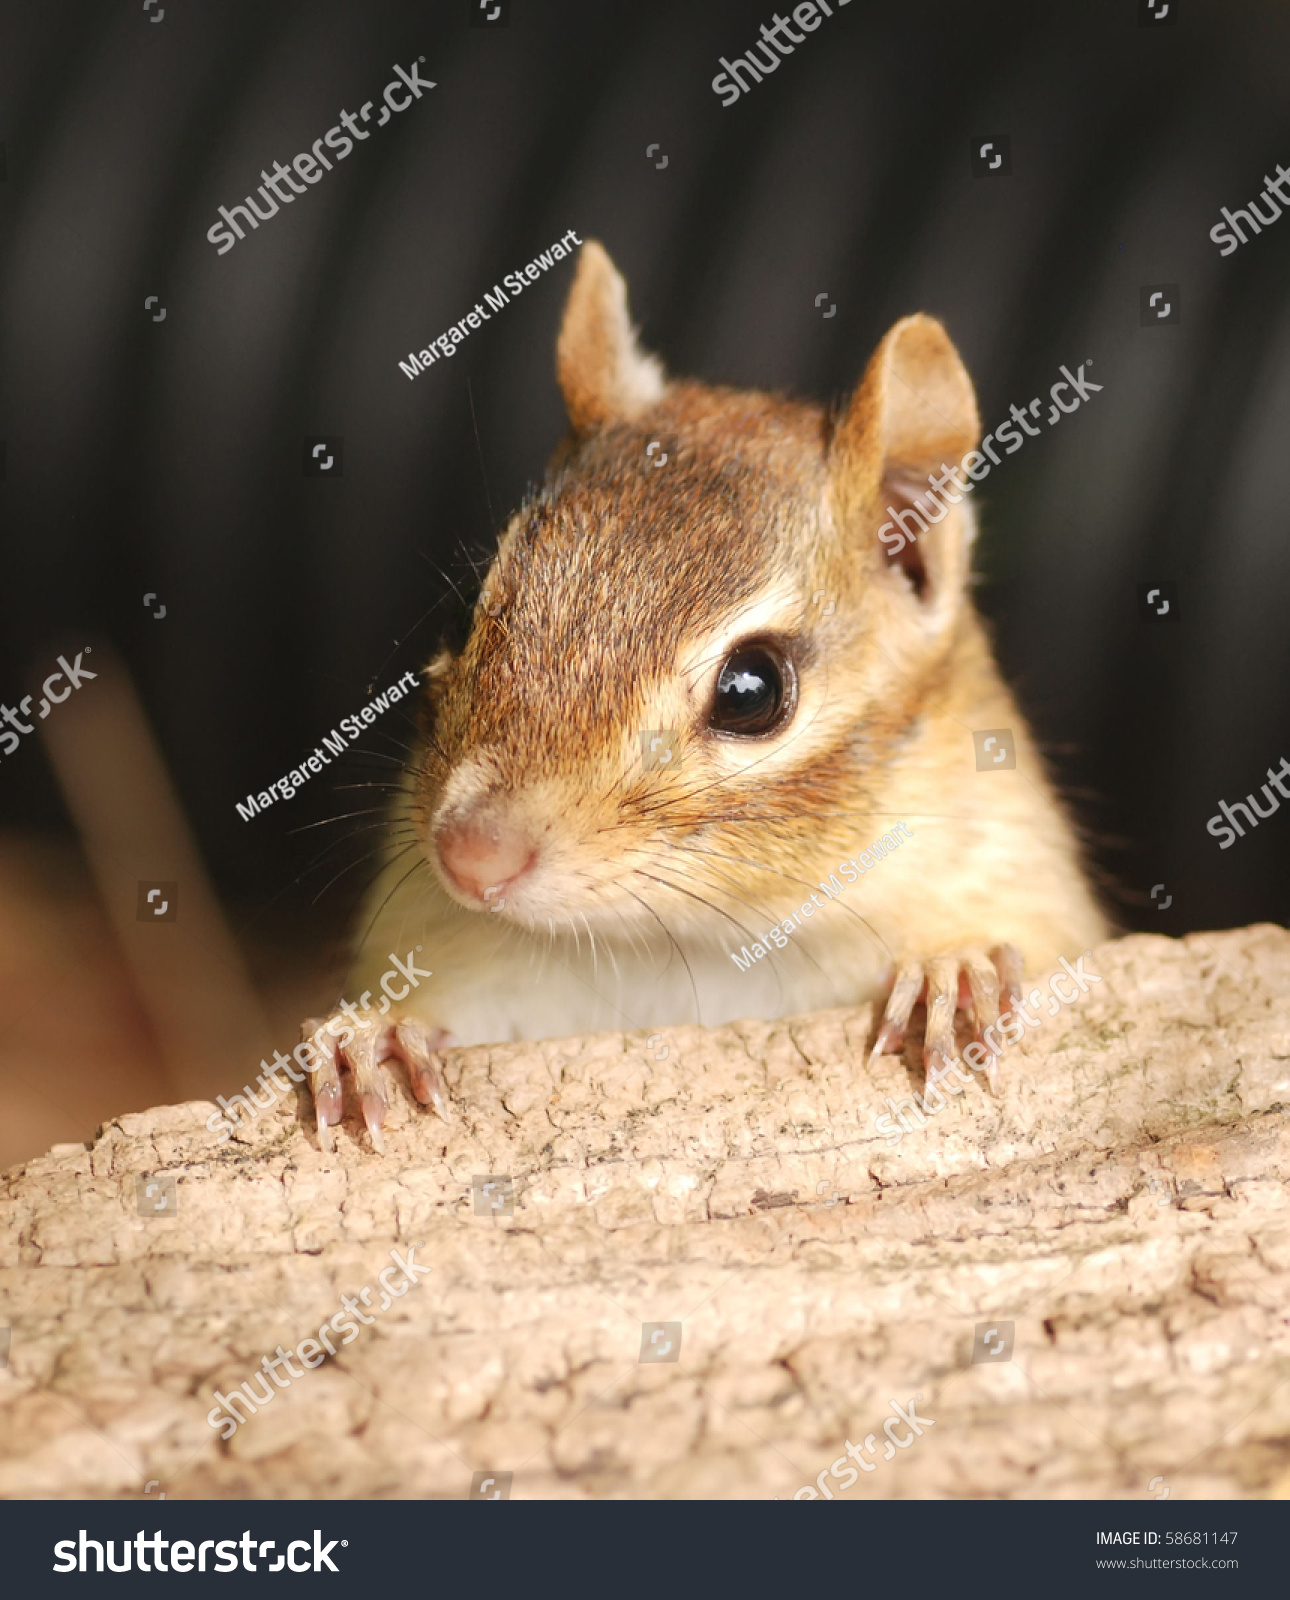 Closeup Female Chipmunk Stock Photo 58681147 - Shutterstock